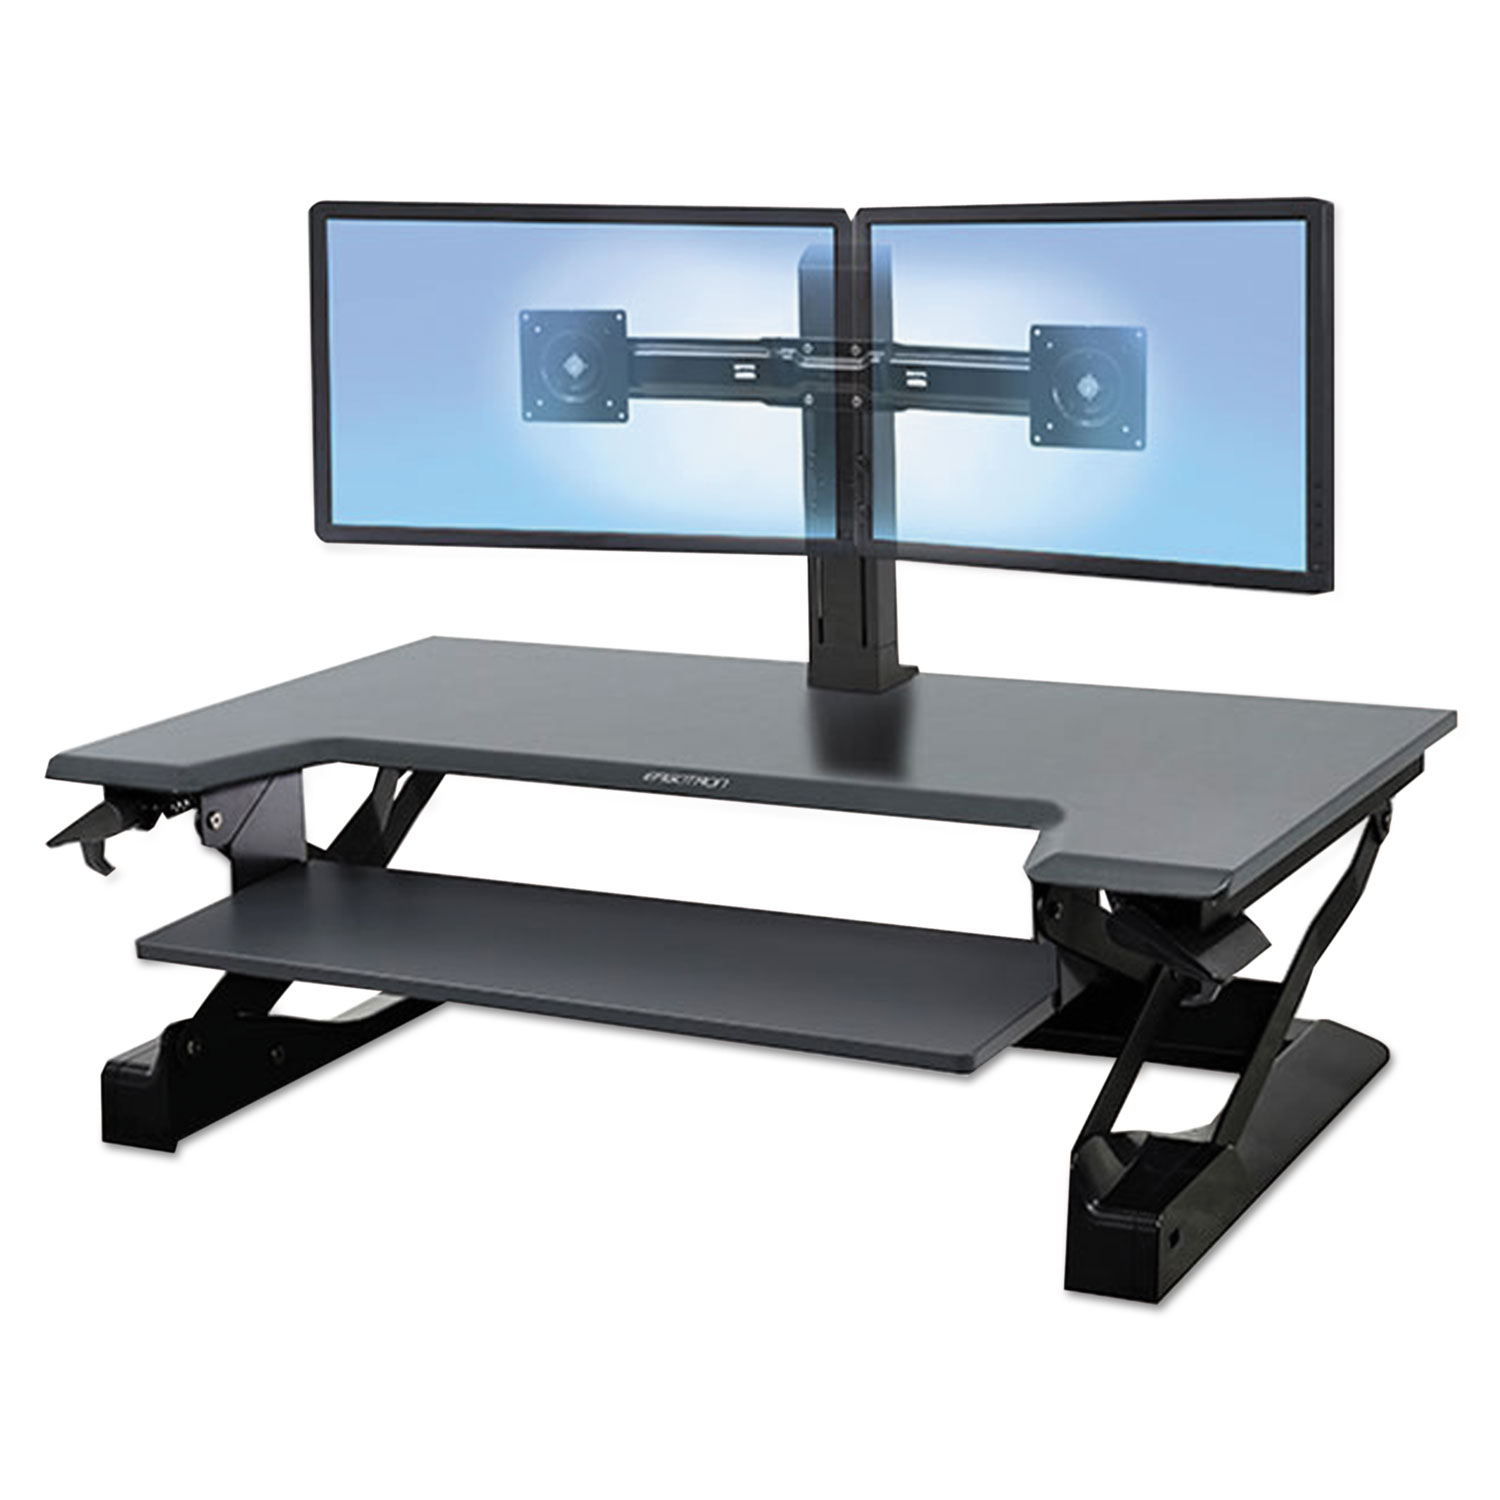 Ergotron WorkFit-TL Adjustable Sit to Stand Standing Desk Workstation Converter - image 4 of 6